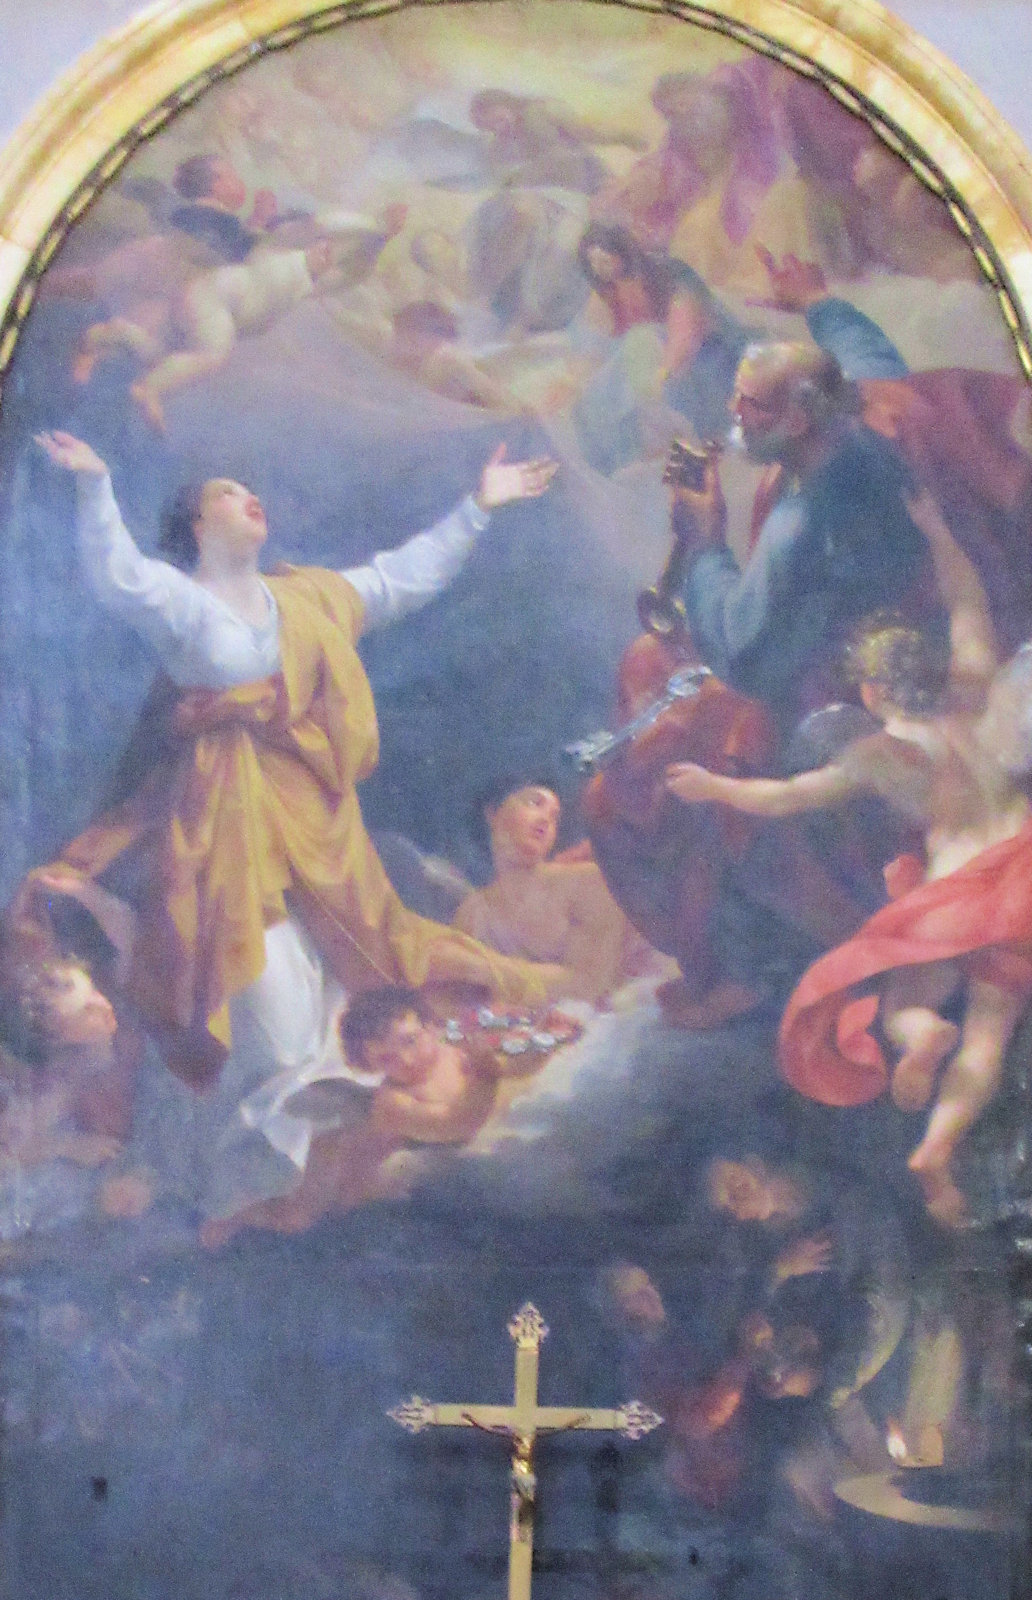 Altarbild: die Verherrlichung von Pudentiana und Petrus, in der Kirche Santa Pudenziana in Rom